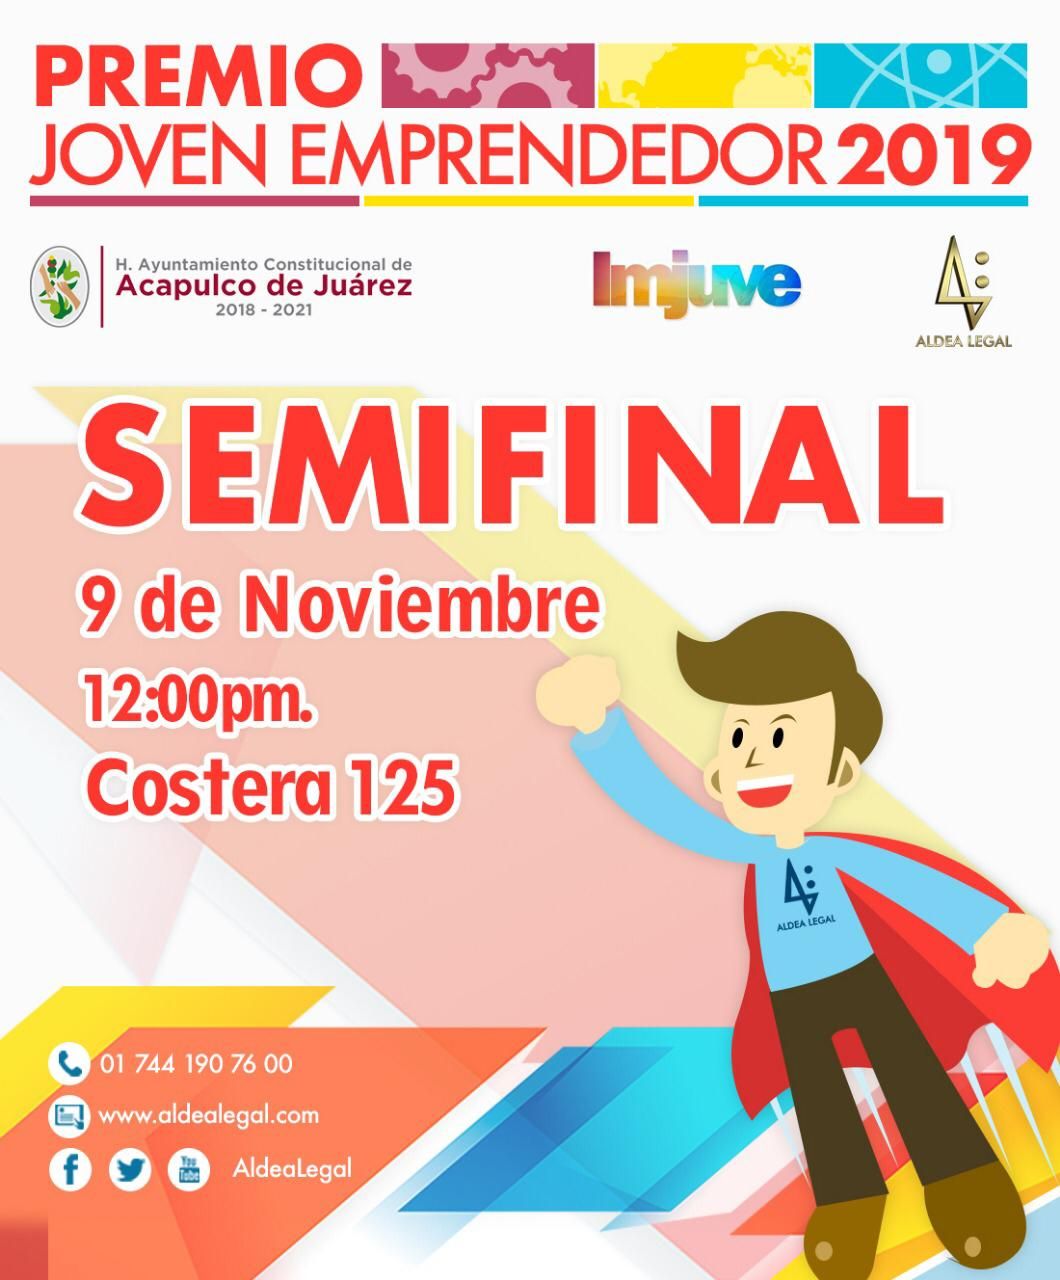 Hoy, gran semifinal Premio Joven Emprendedor 2019 